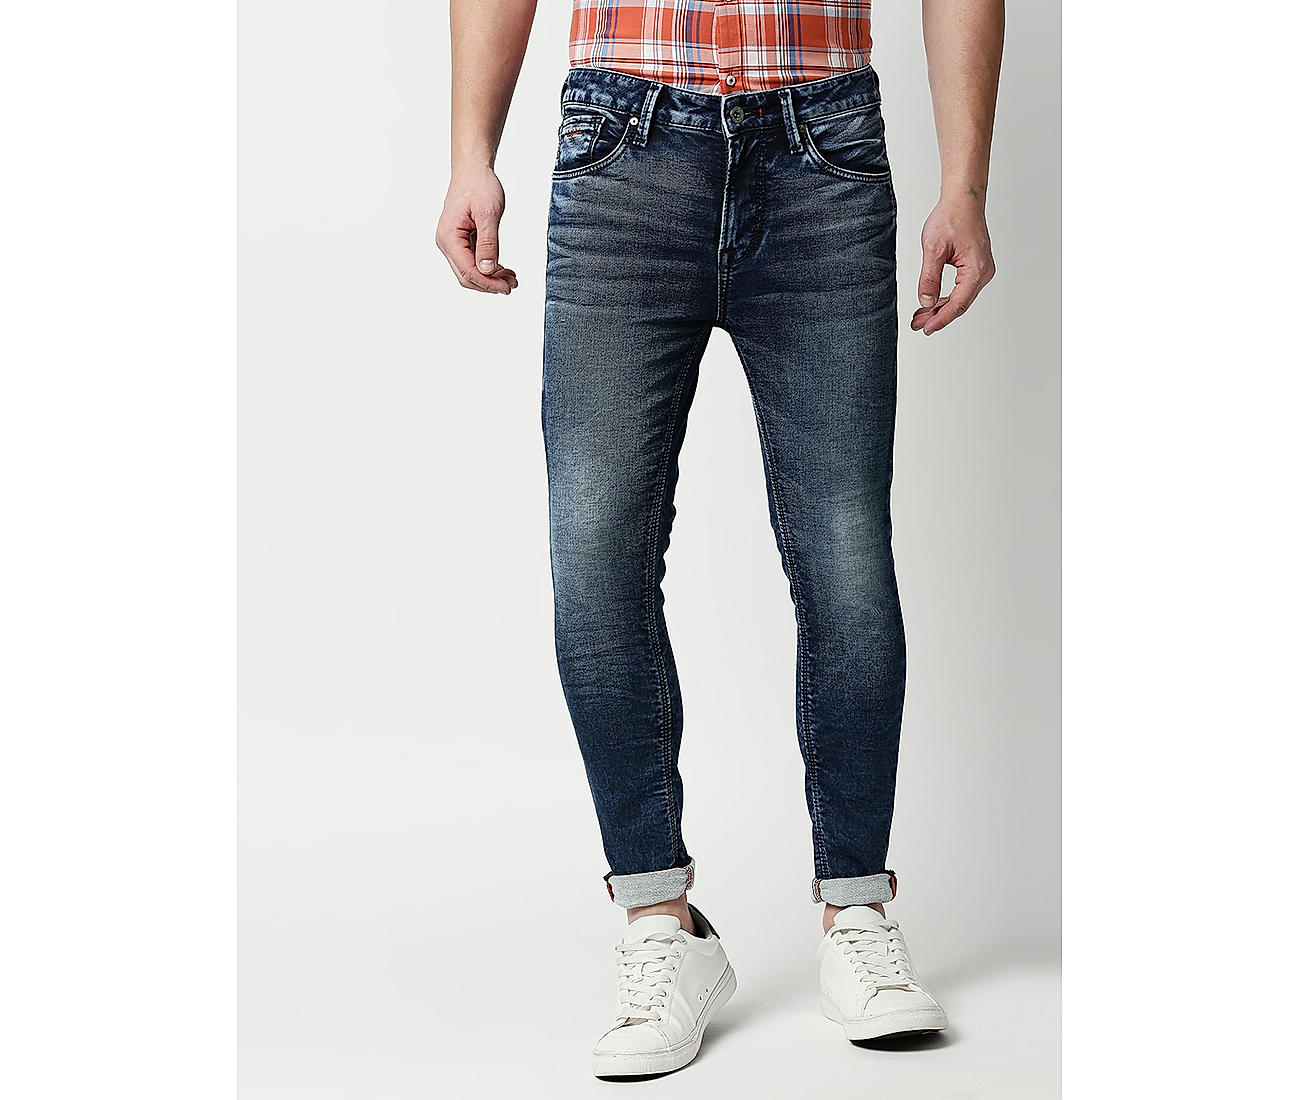 Buy Indigo Slim Fit Solid Jeans for Men Online at Killer | 493767